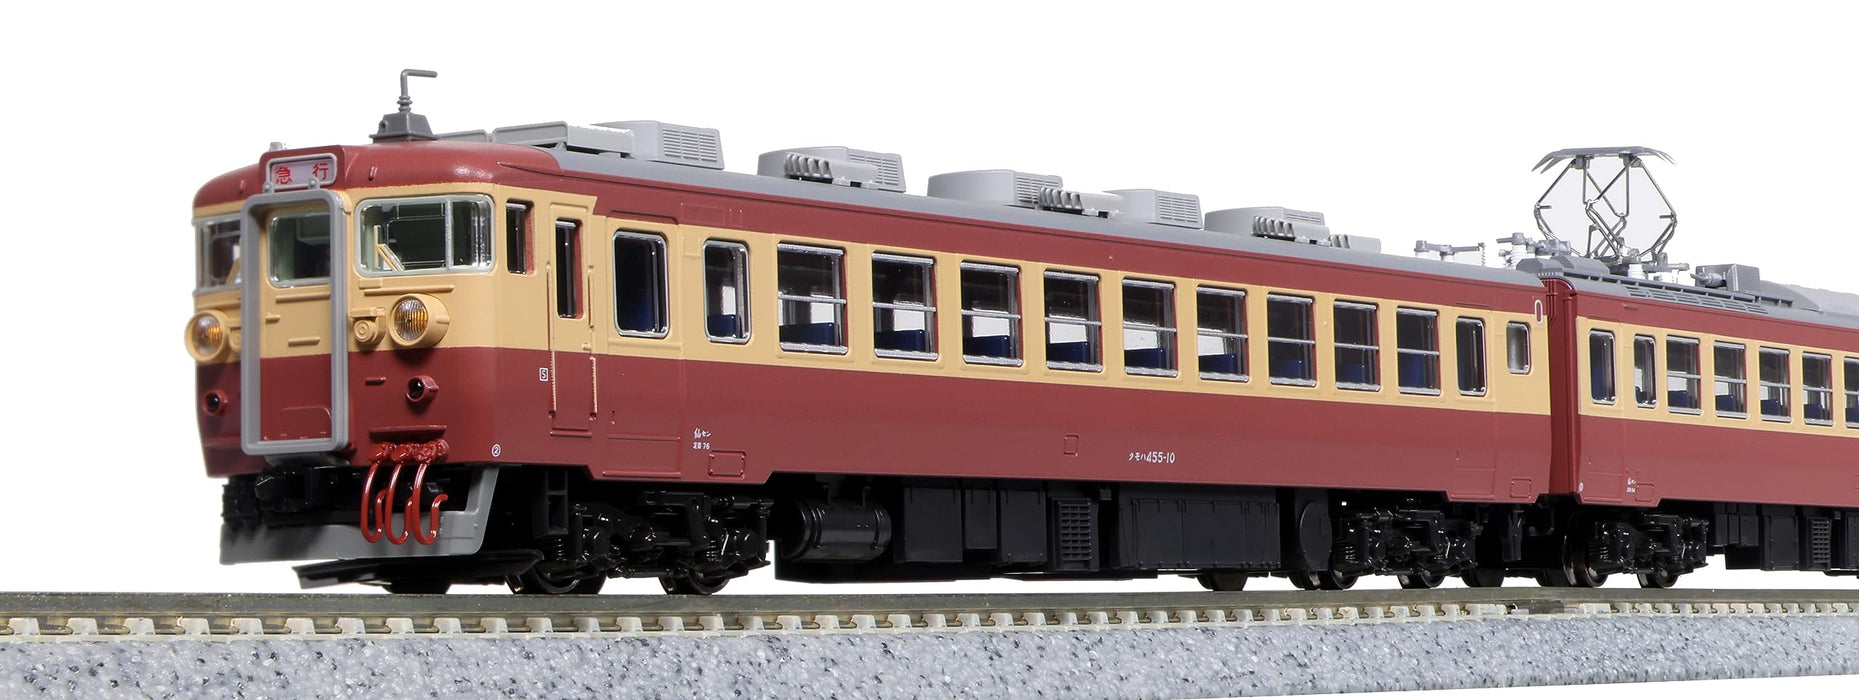 Kato N Gauge 455 Matsushima 7-Car Model Train - Series Express 10-1632